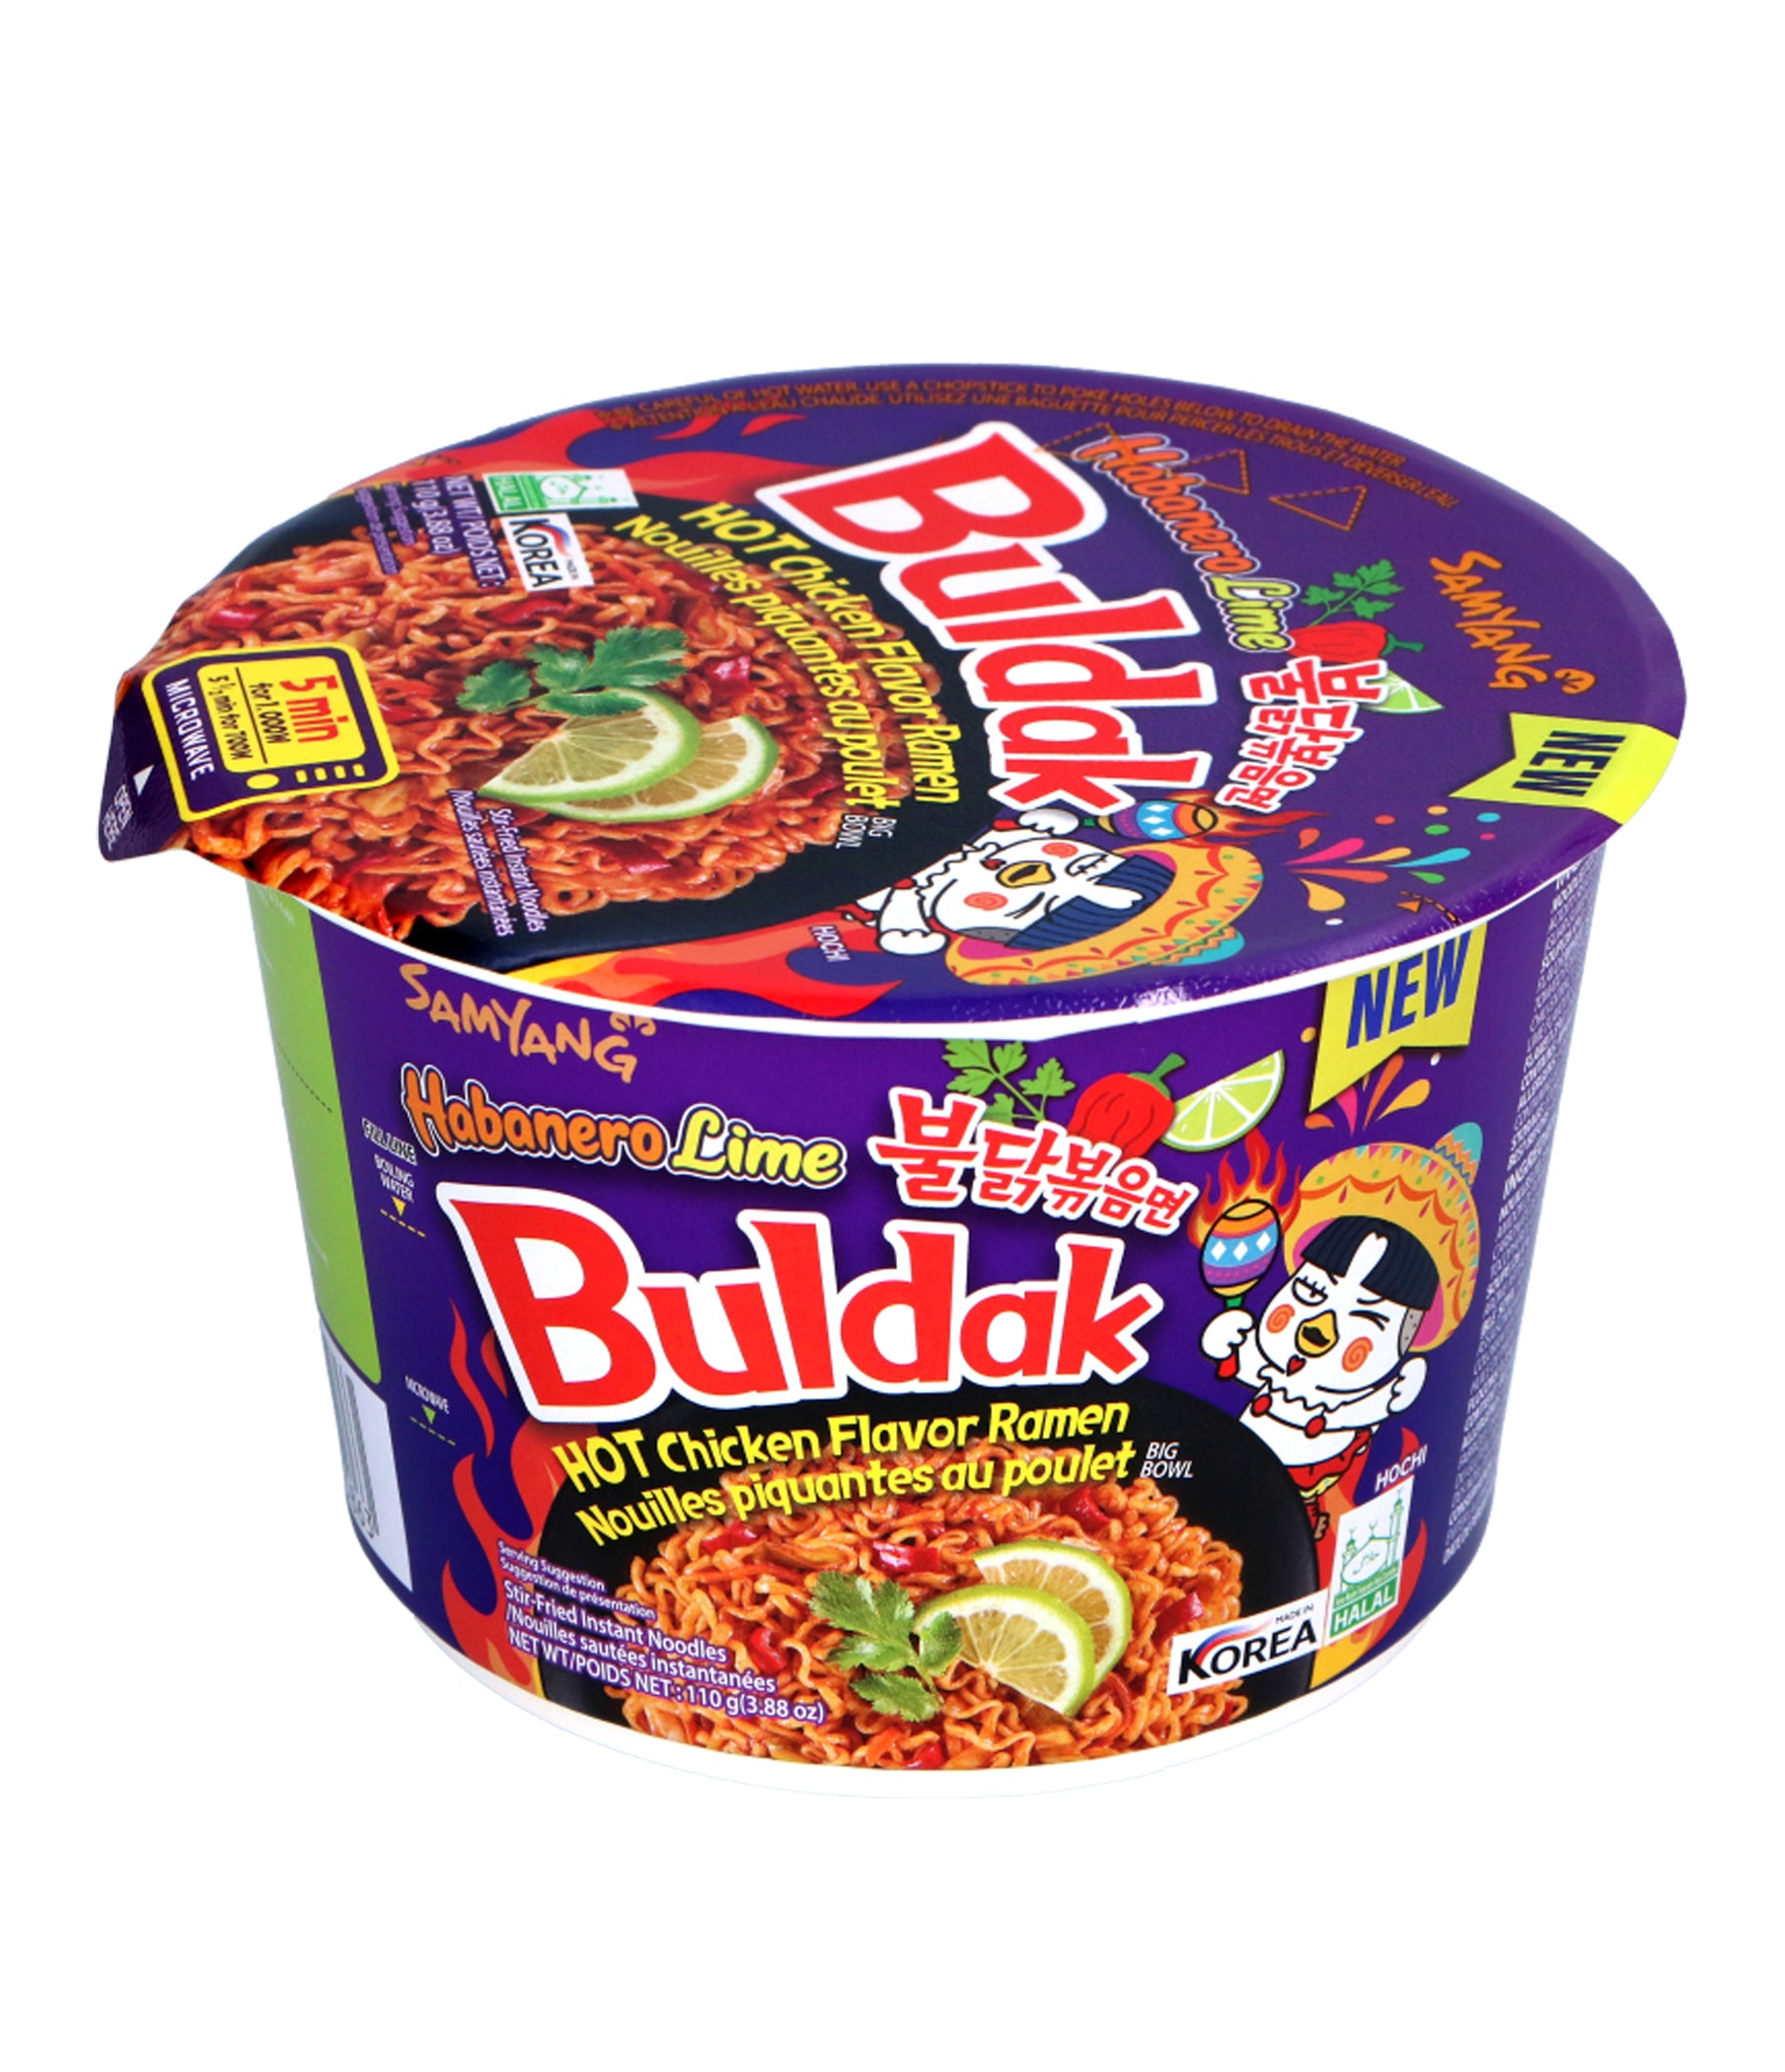 Samyang – Poulet épicé Buldak Noodle Big-Bowl (Habanero Lime) 105g (paquet de 16)